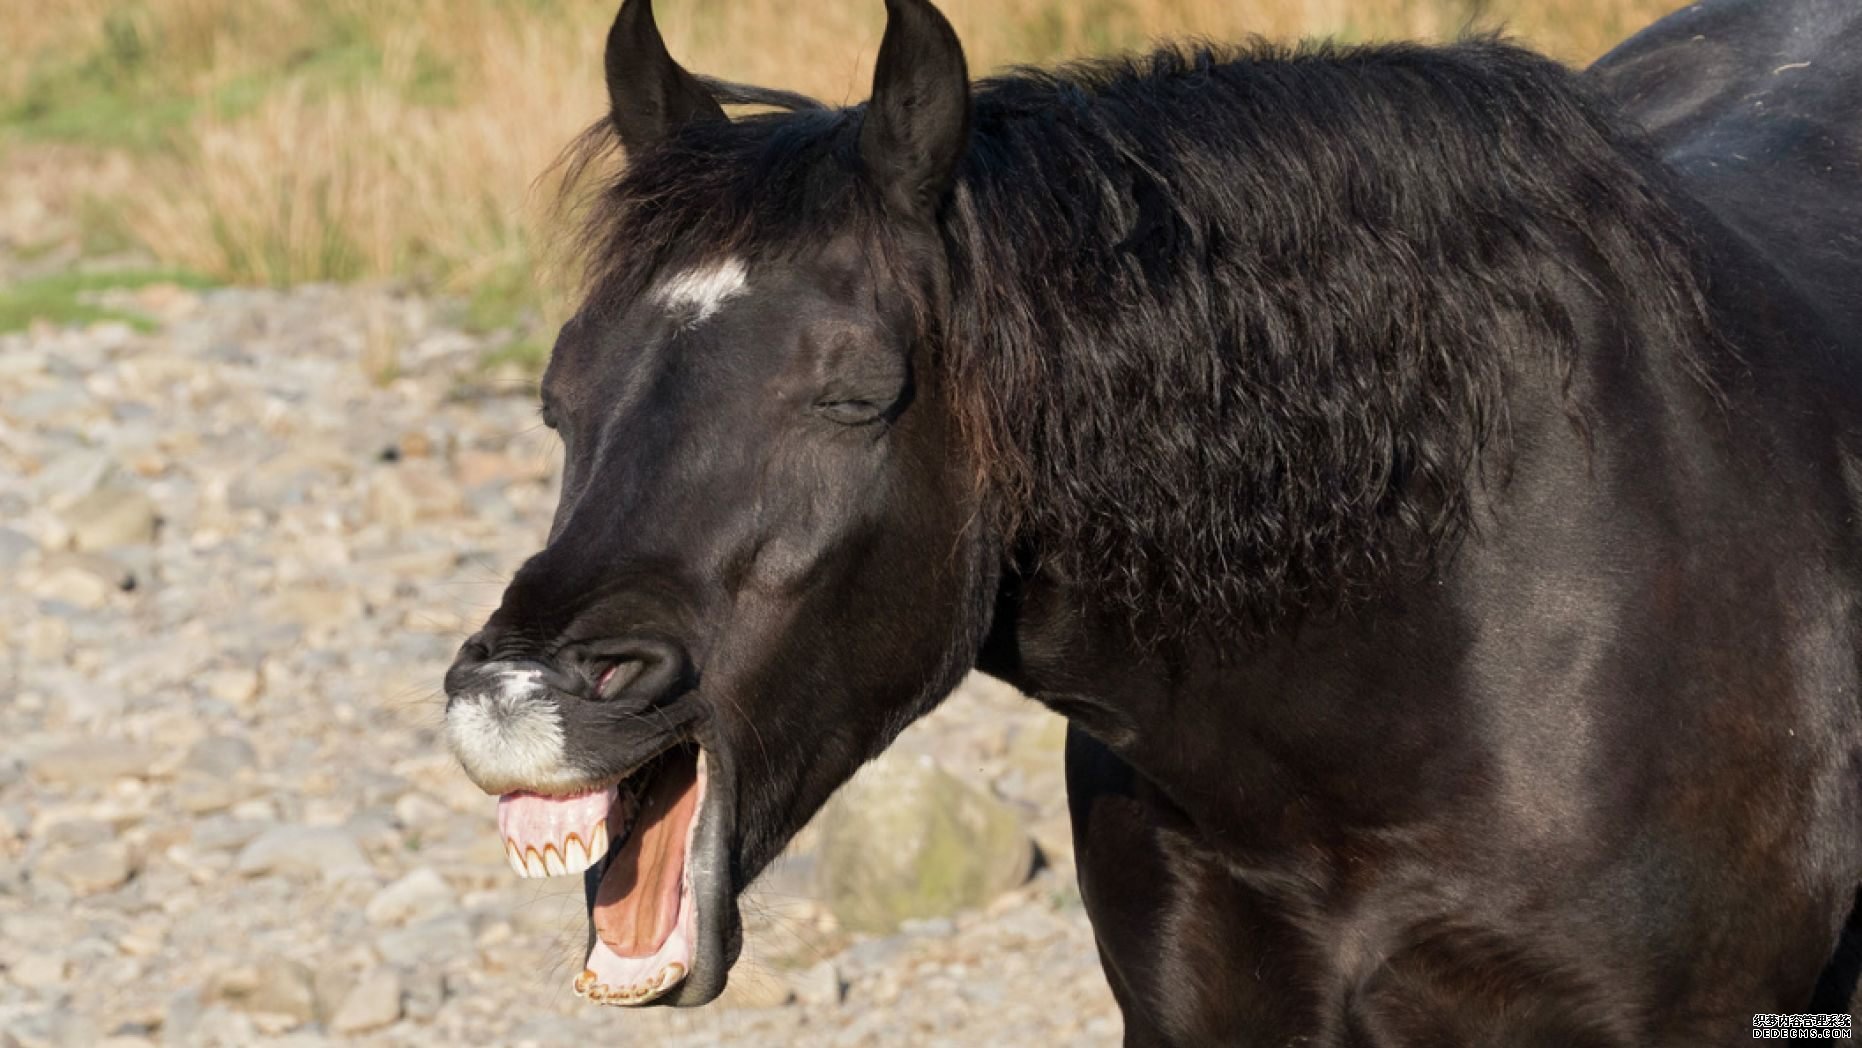 杏3沐鸣平台,令人惊讶的照片显示了这匹马看起来像在歇斯底里地大笑